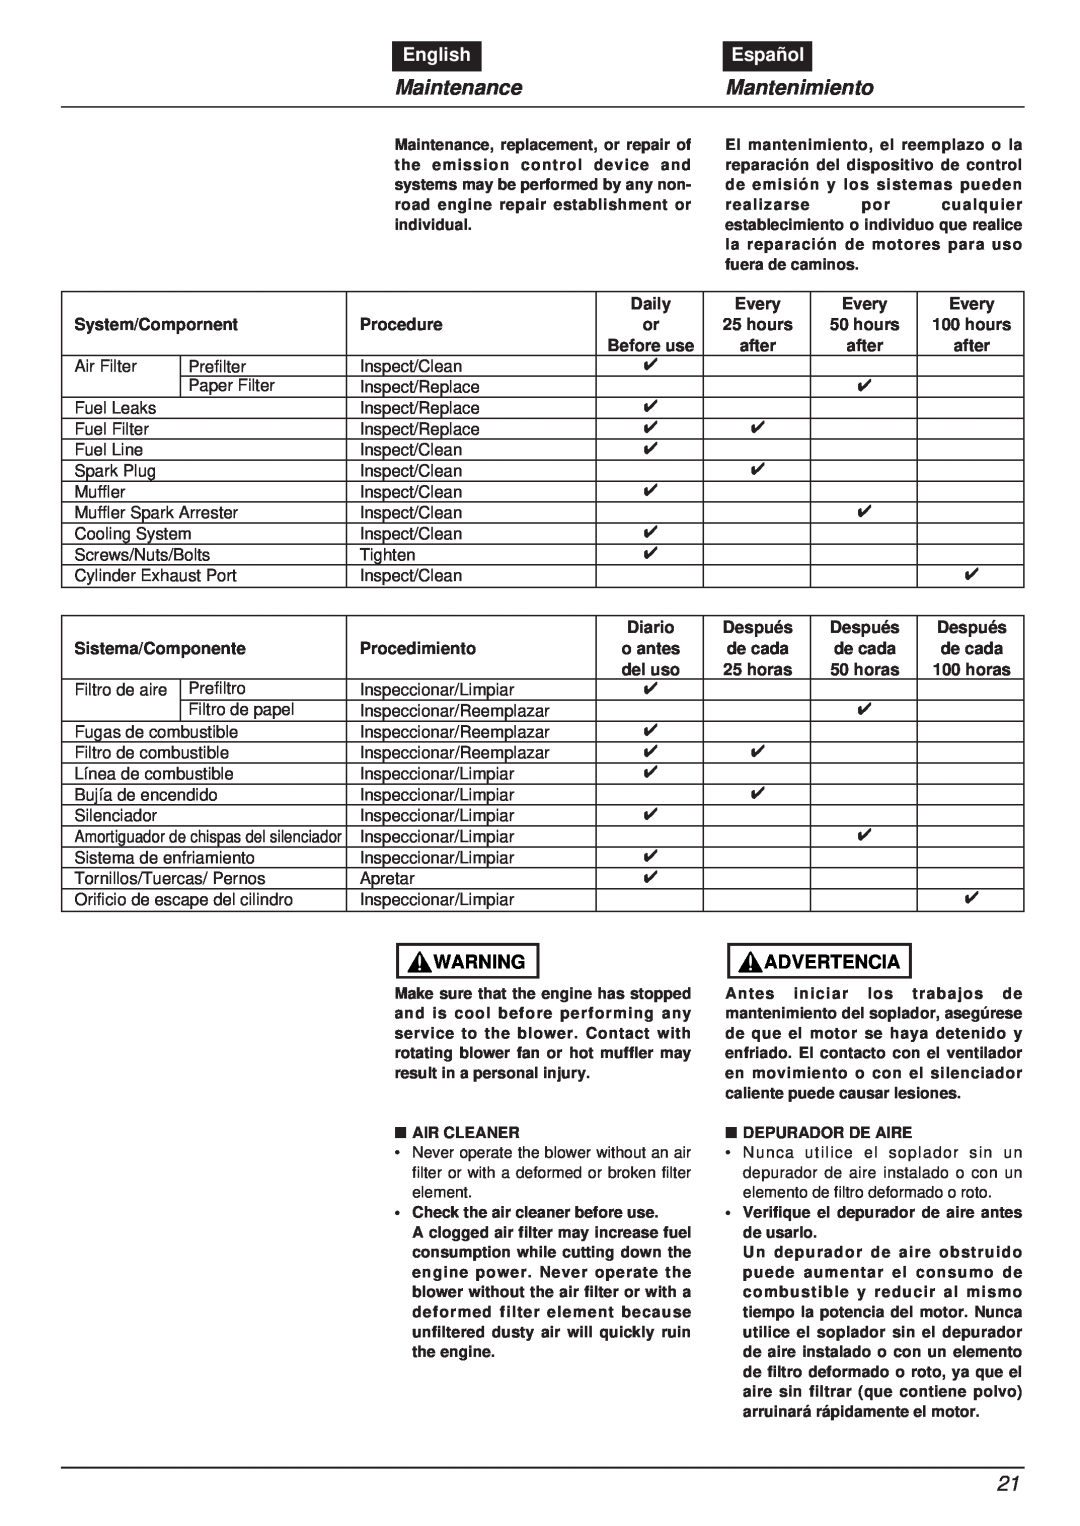 RedMax EBZ8000RH manual MaintenanceMantenimiento, English, Español, Advertencia, Amortiguador de chispas del silenciador 